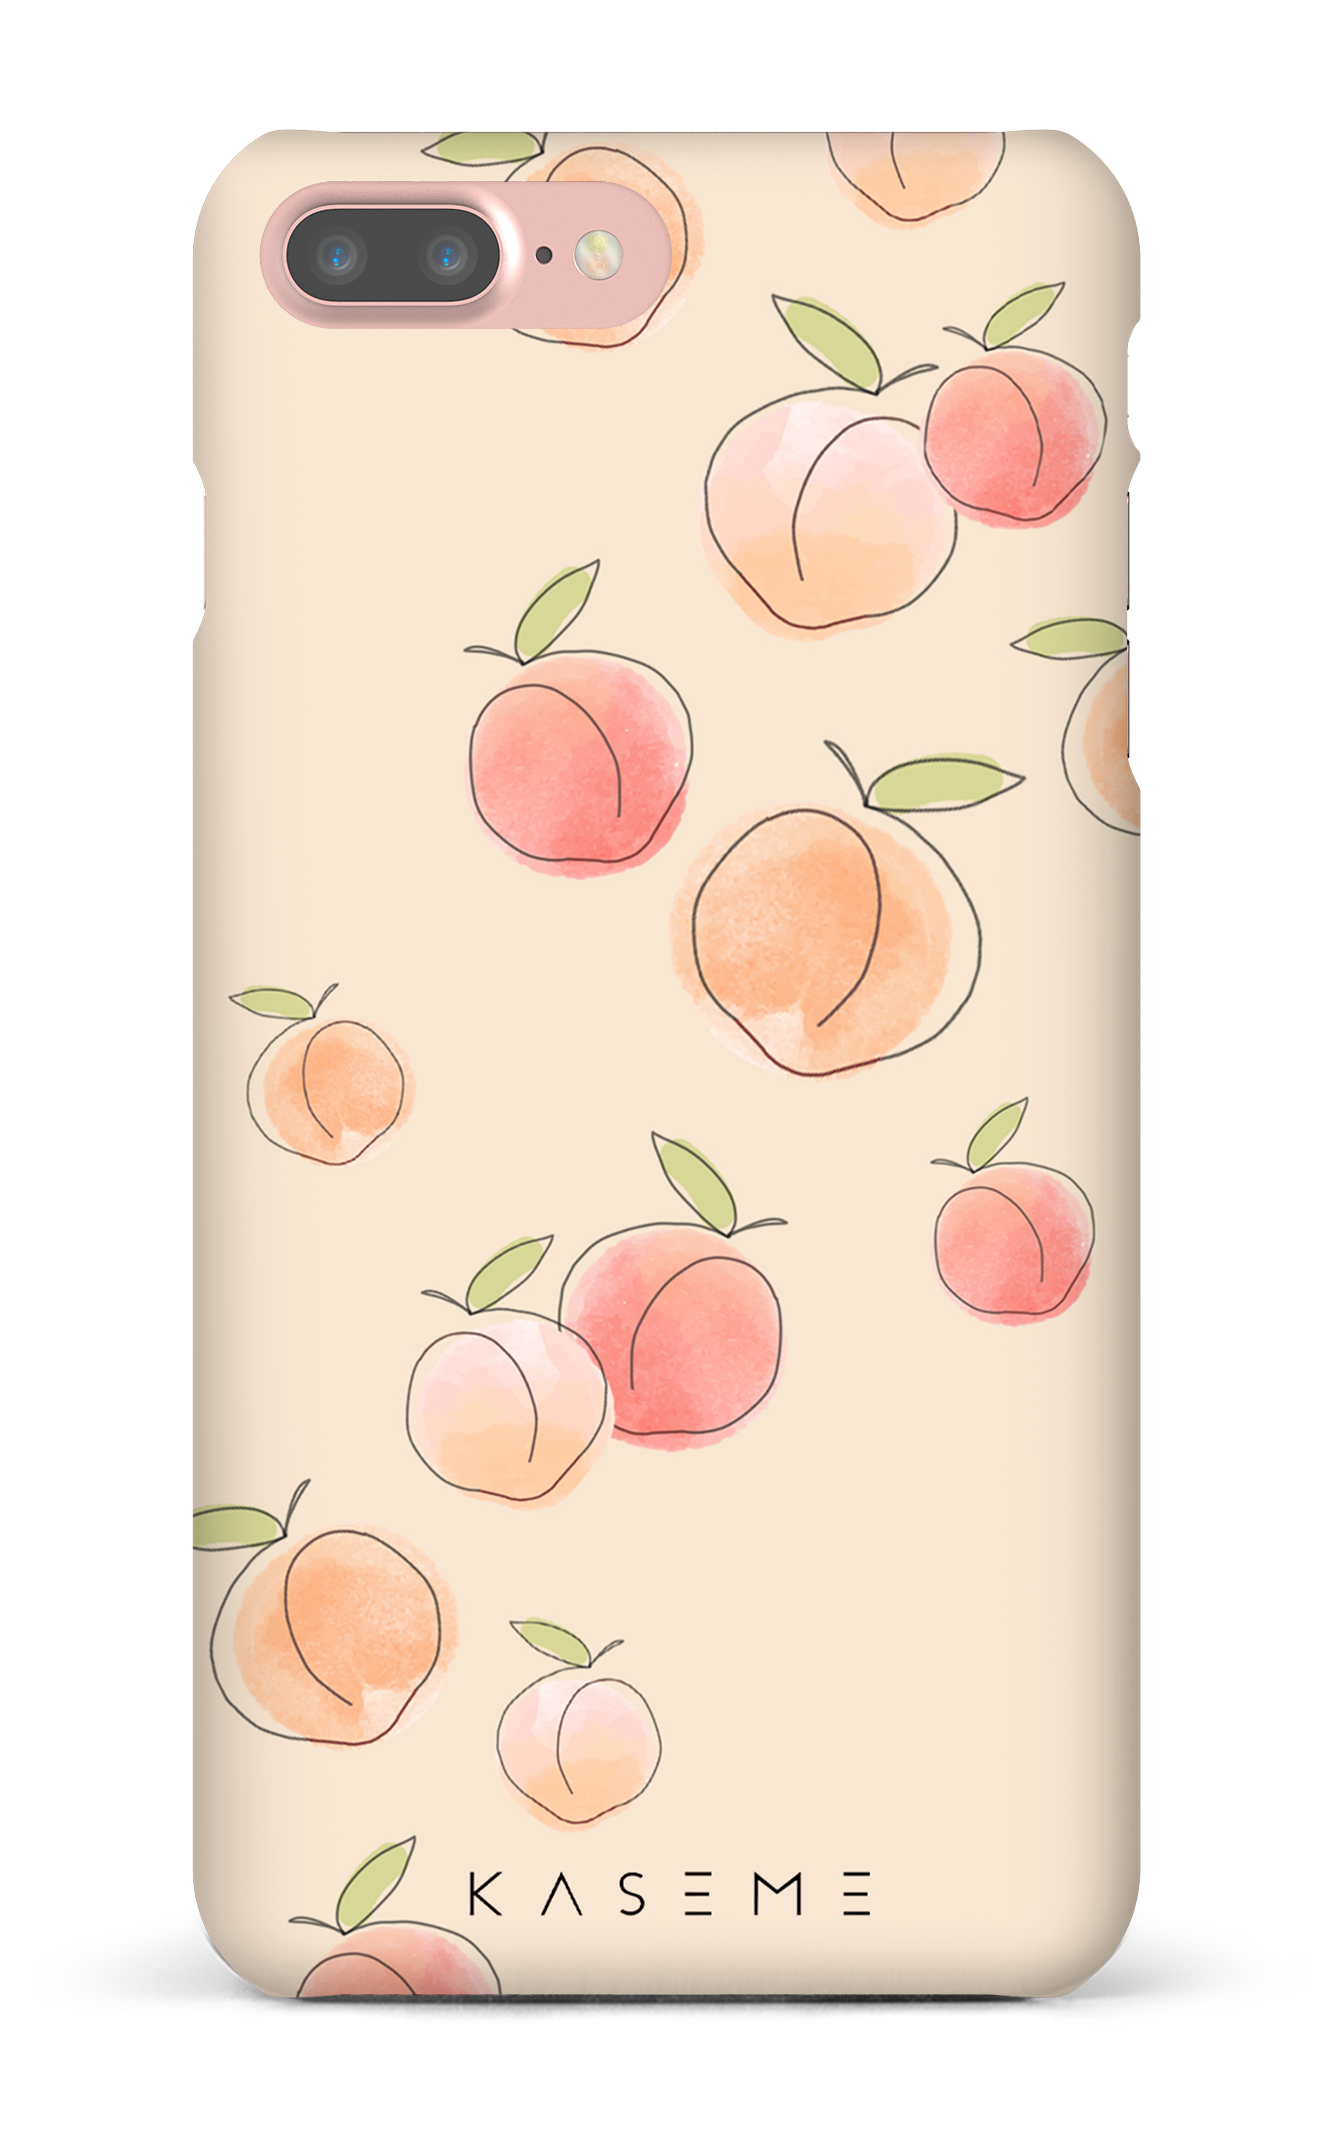 Peachy - iPhone 7 Plus